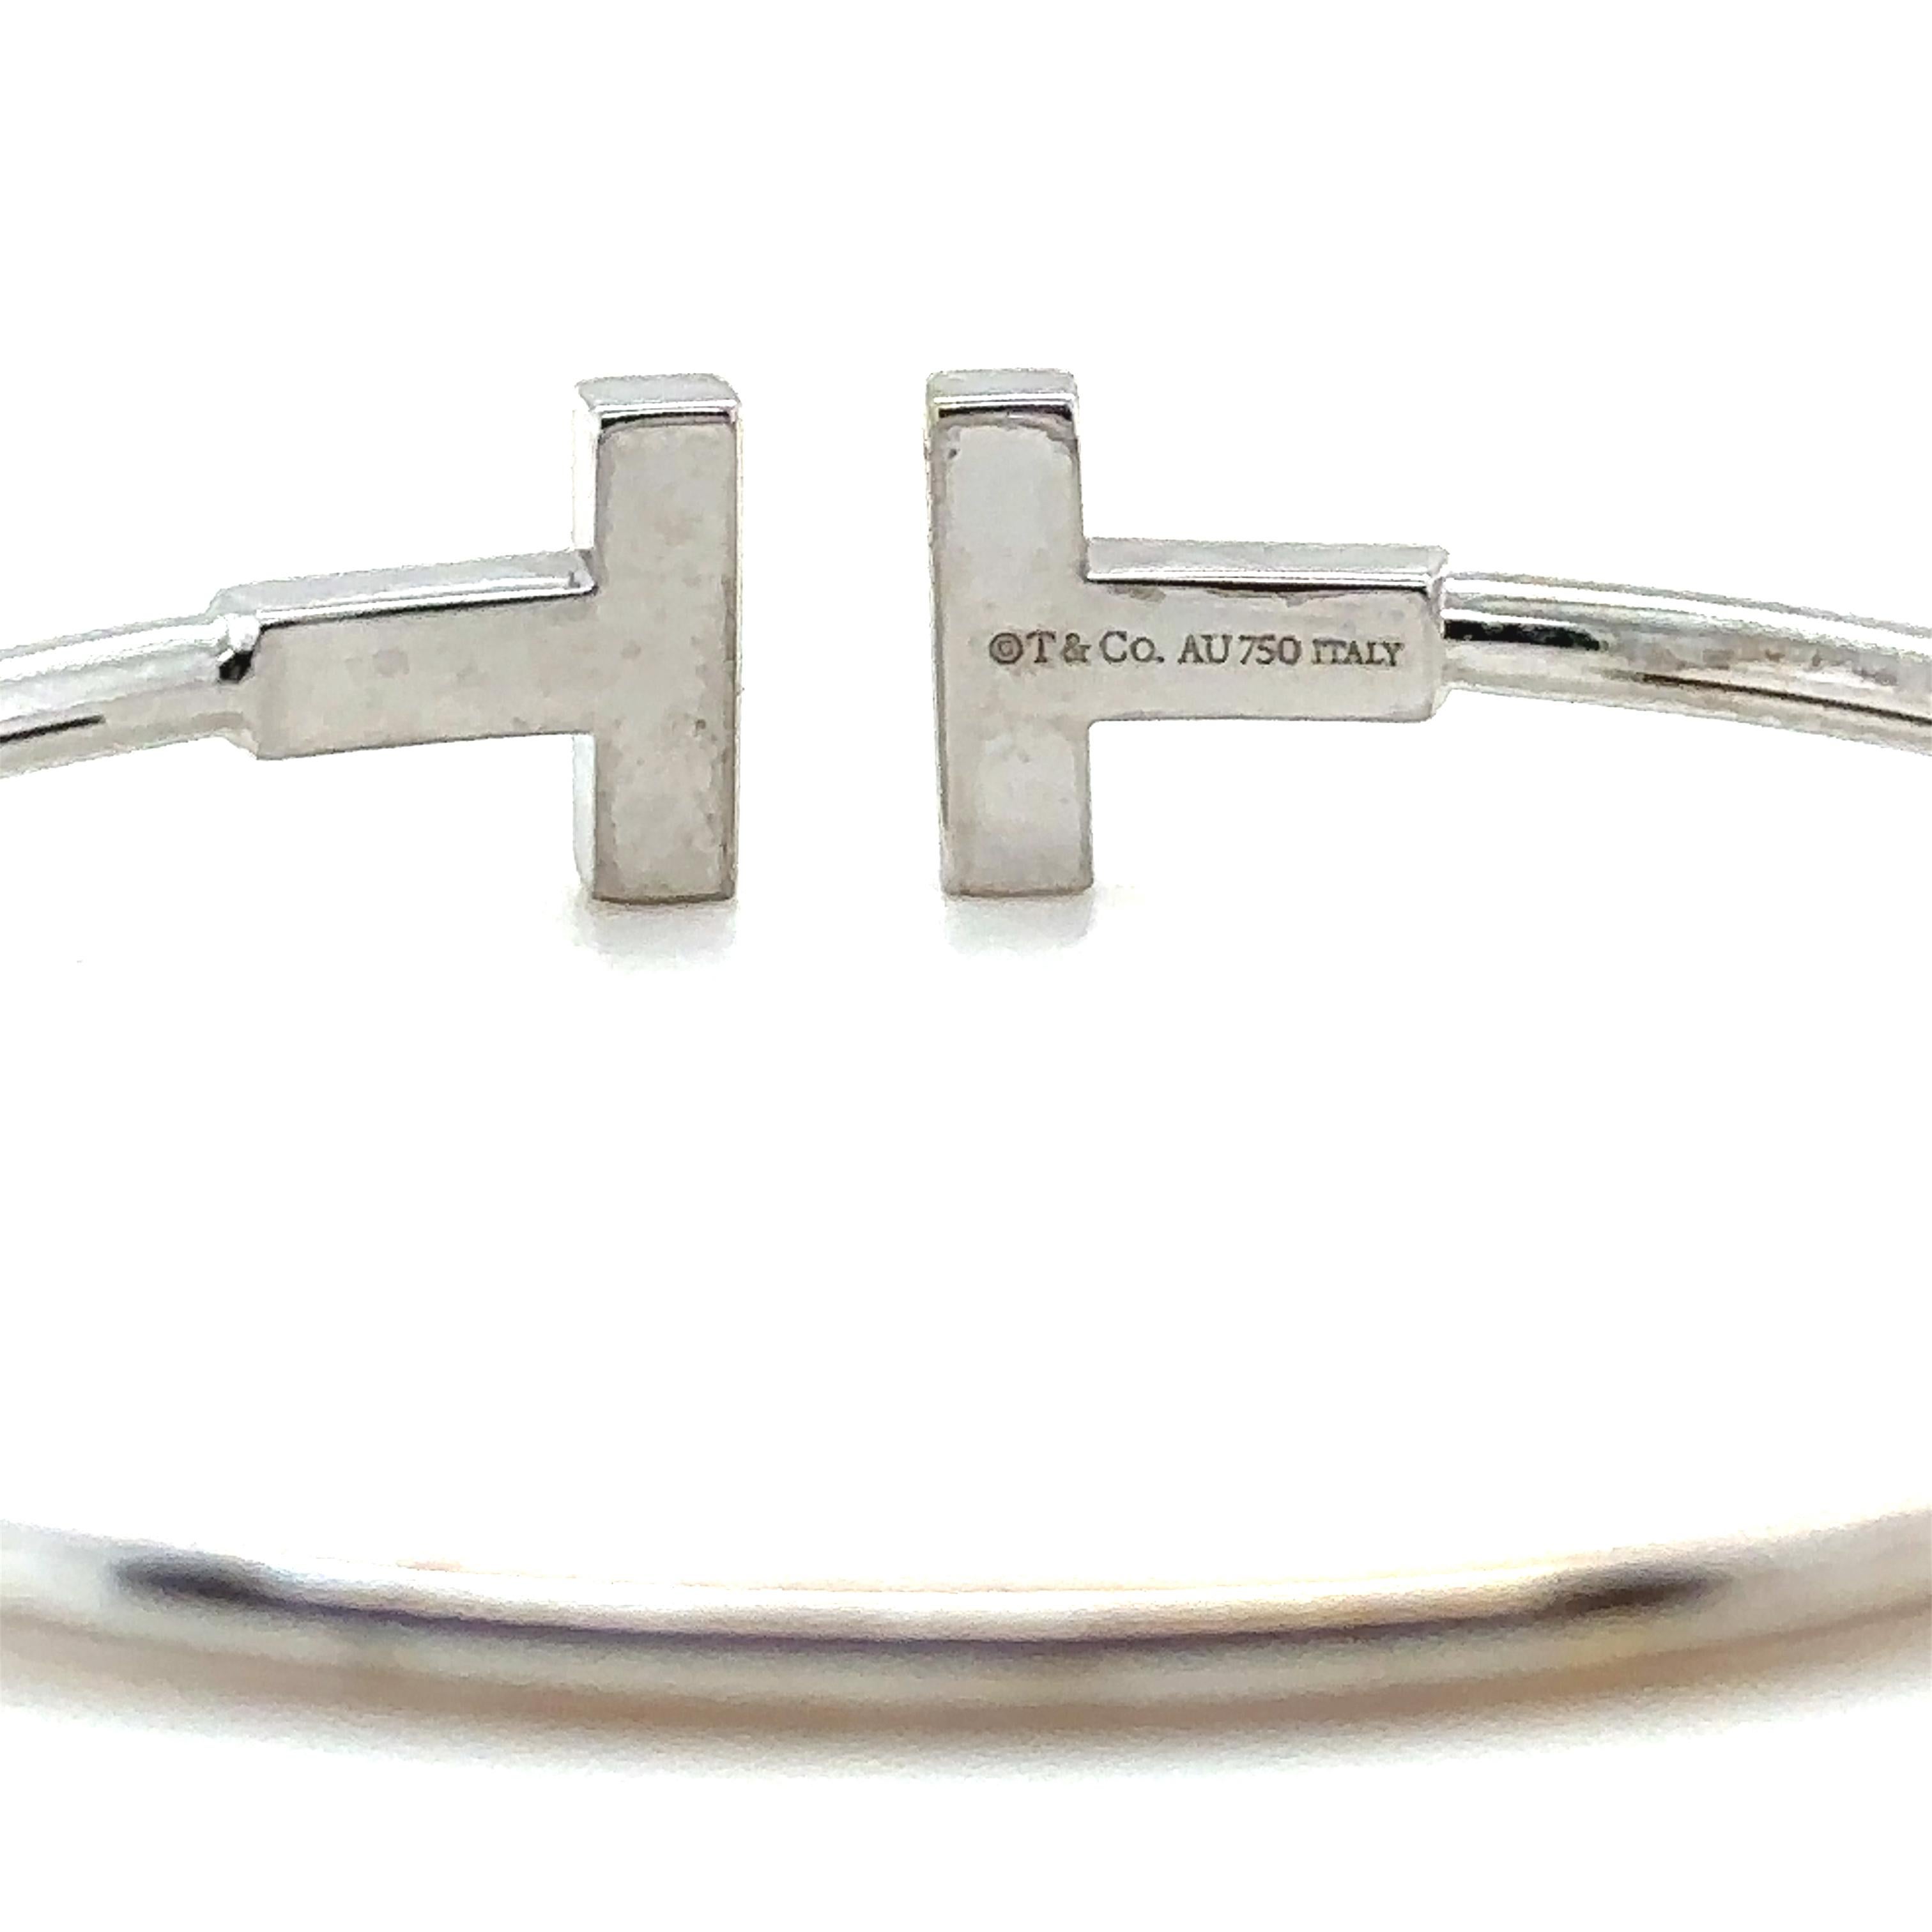 Bracelet Tiffany & Co Diamond Wire en or blanc 18ct.

Style / numéro de modèle : 60010748. 

Quantité totale de 18 diamants ronds de taille brillant, de couleur E-F et de pureté VVS-VS. d'un poids total d'environ 0,30 ct.

Métal : Or blanc 18ct